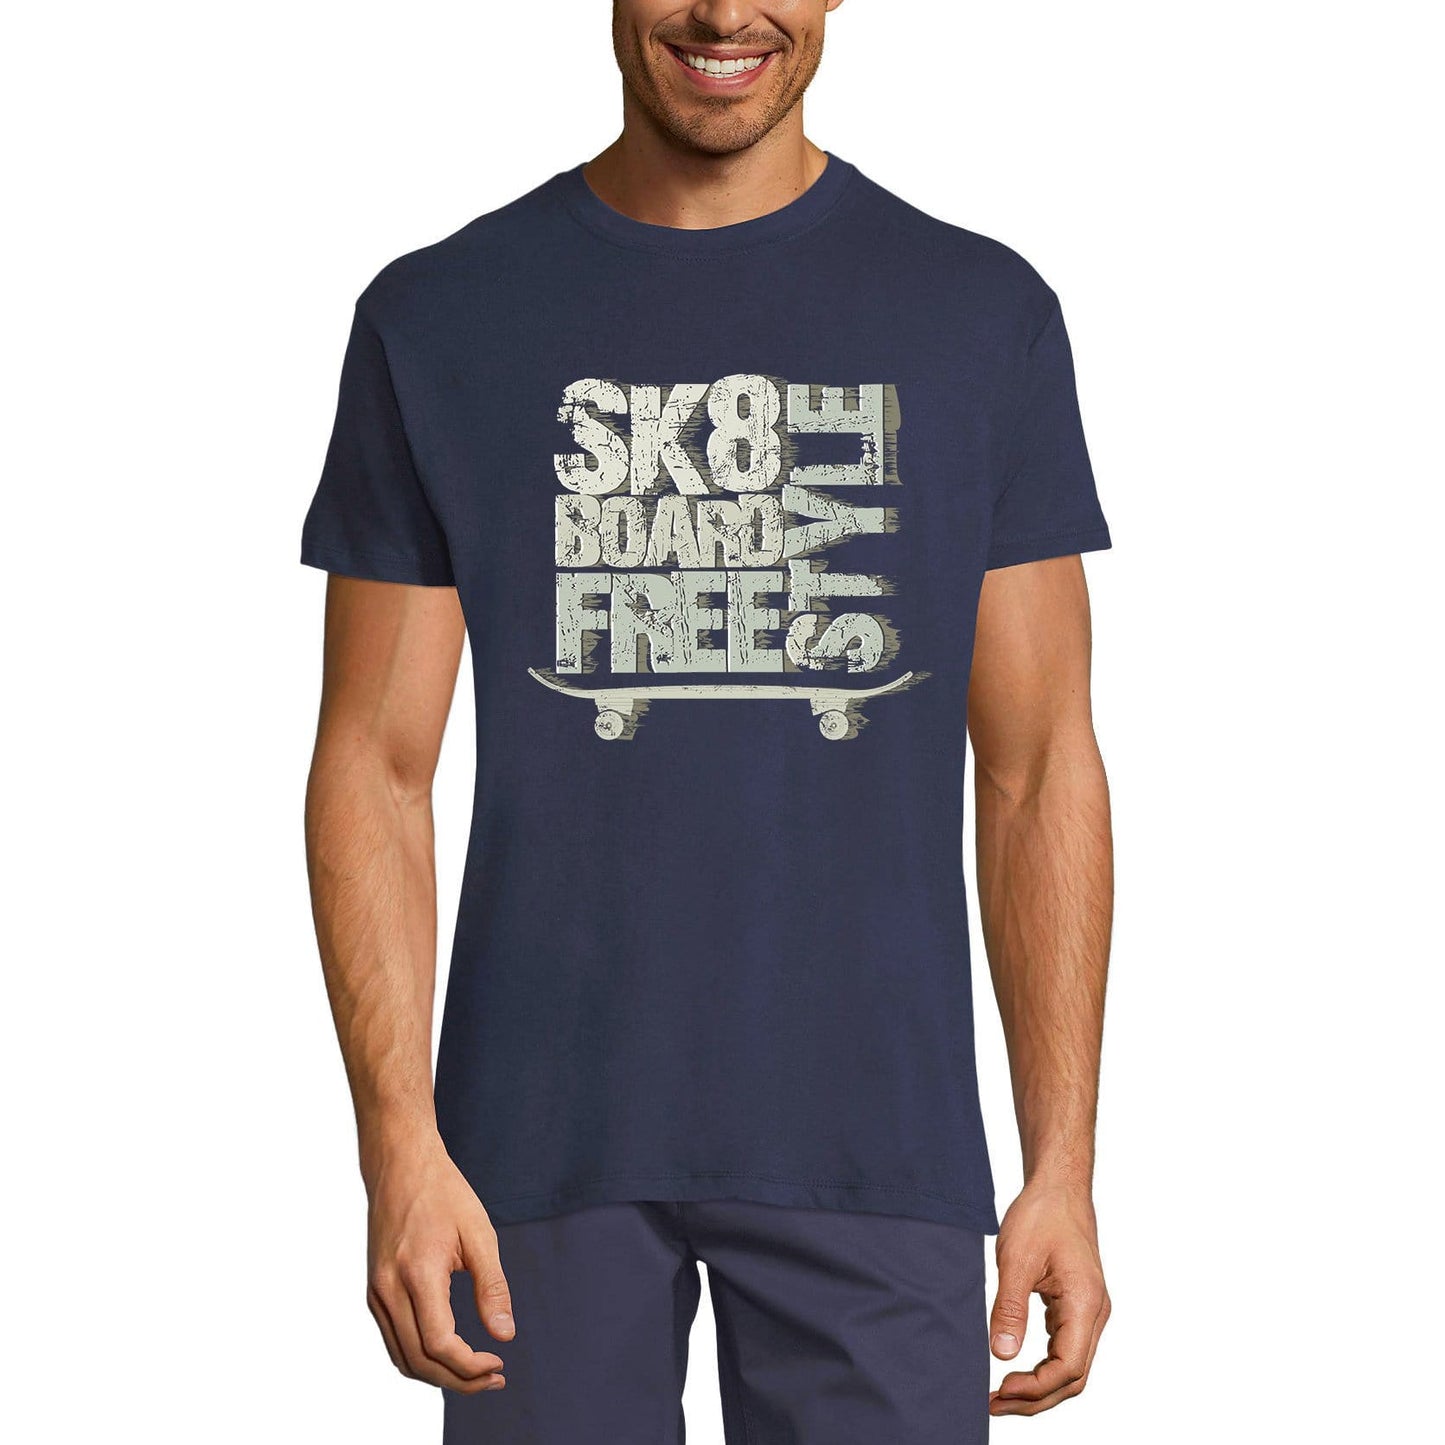 ULTRABASIC Men's Novelty T-Shirt Skate Board Freestyle Tee Shirt